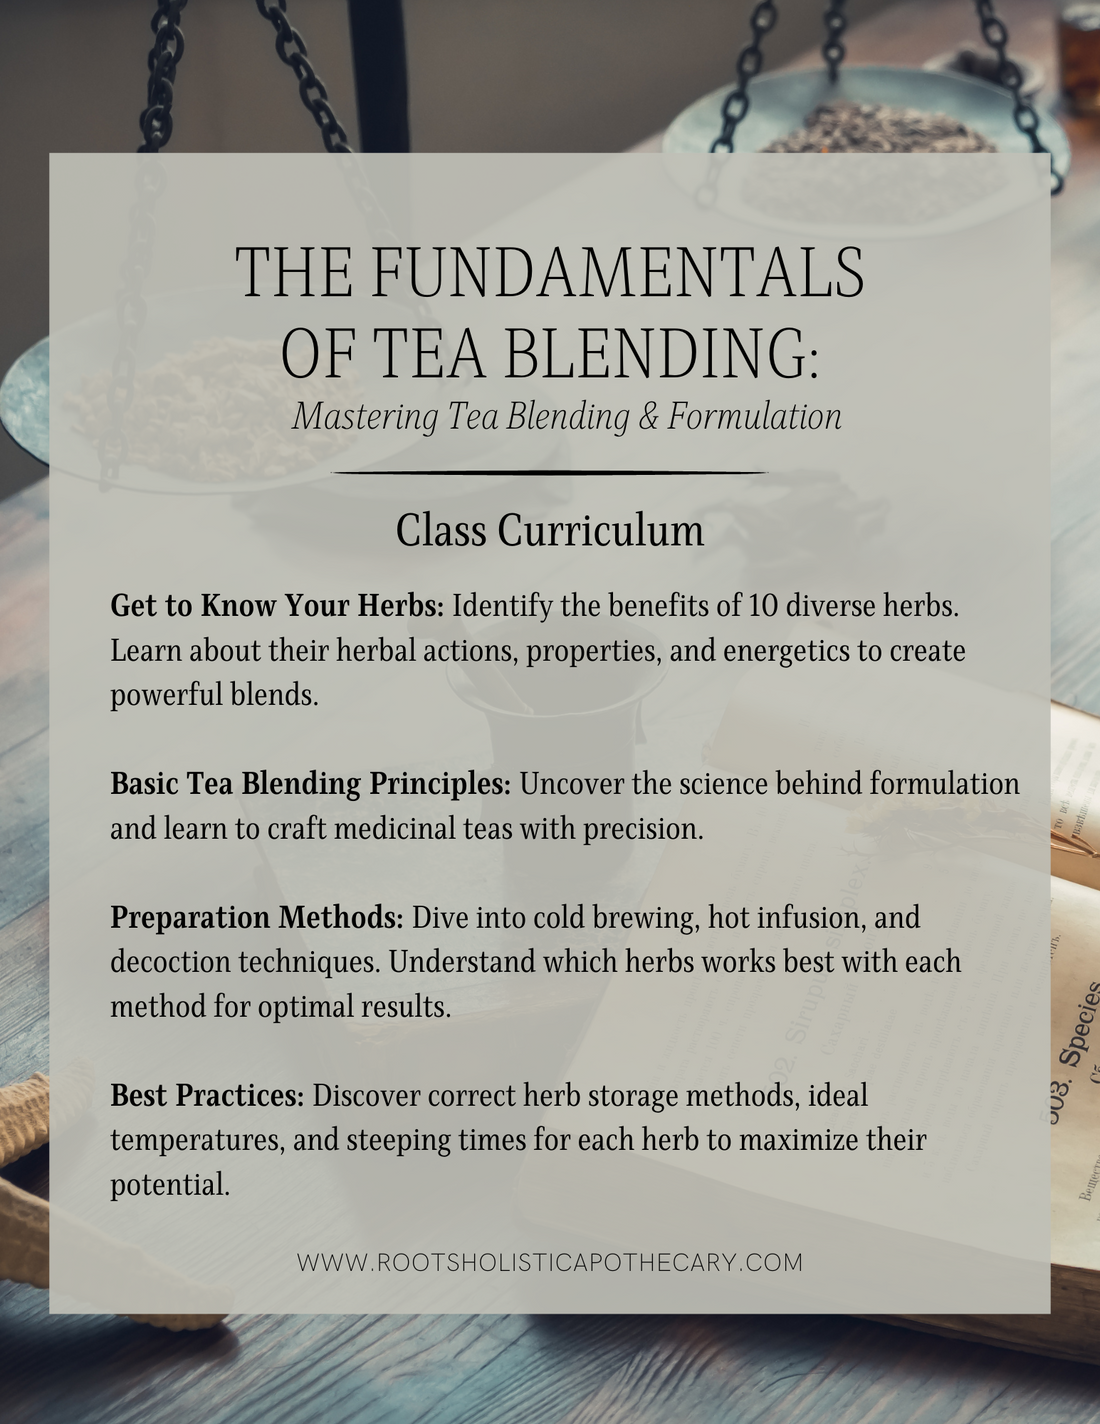 Live Course: Mastering Tea Blending & Formulation